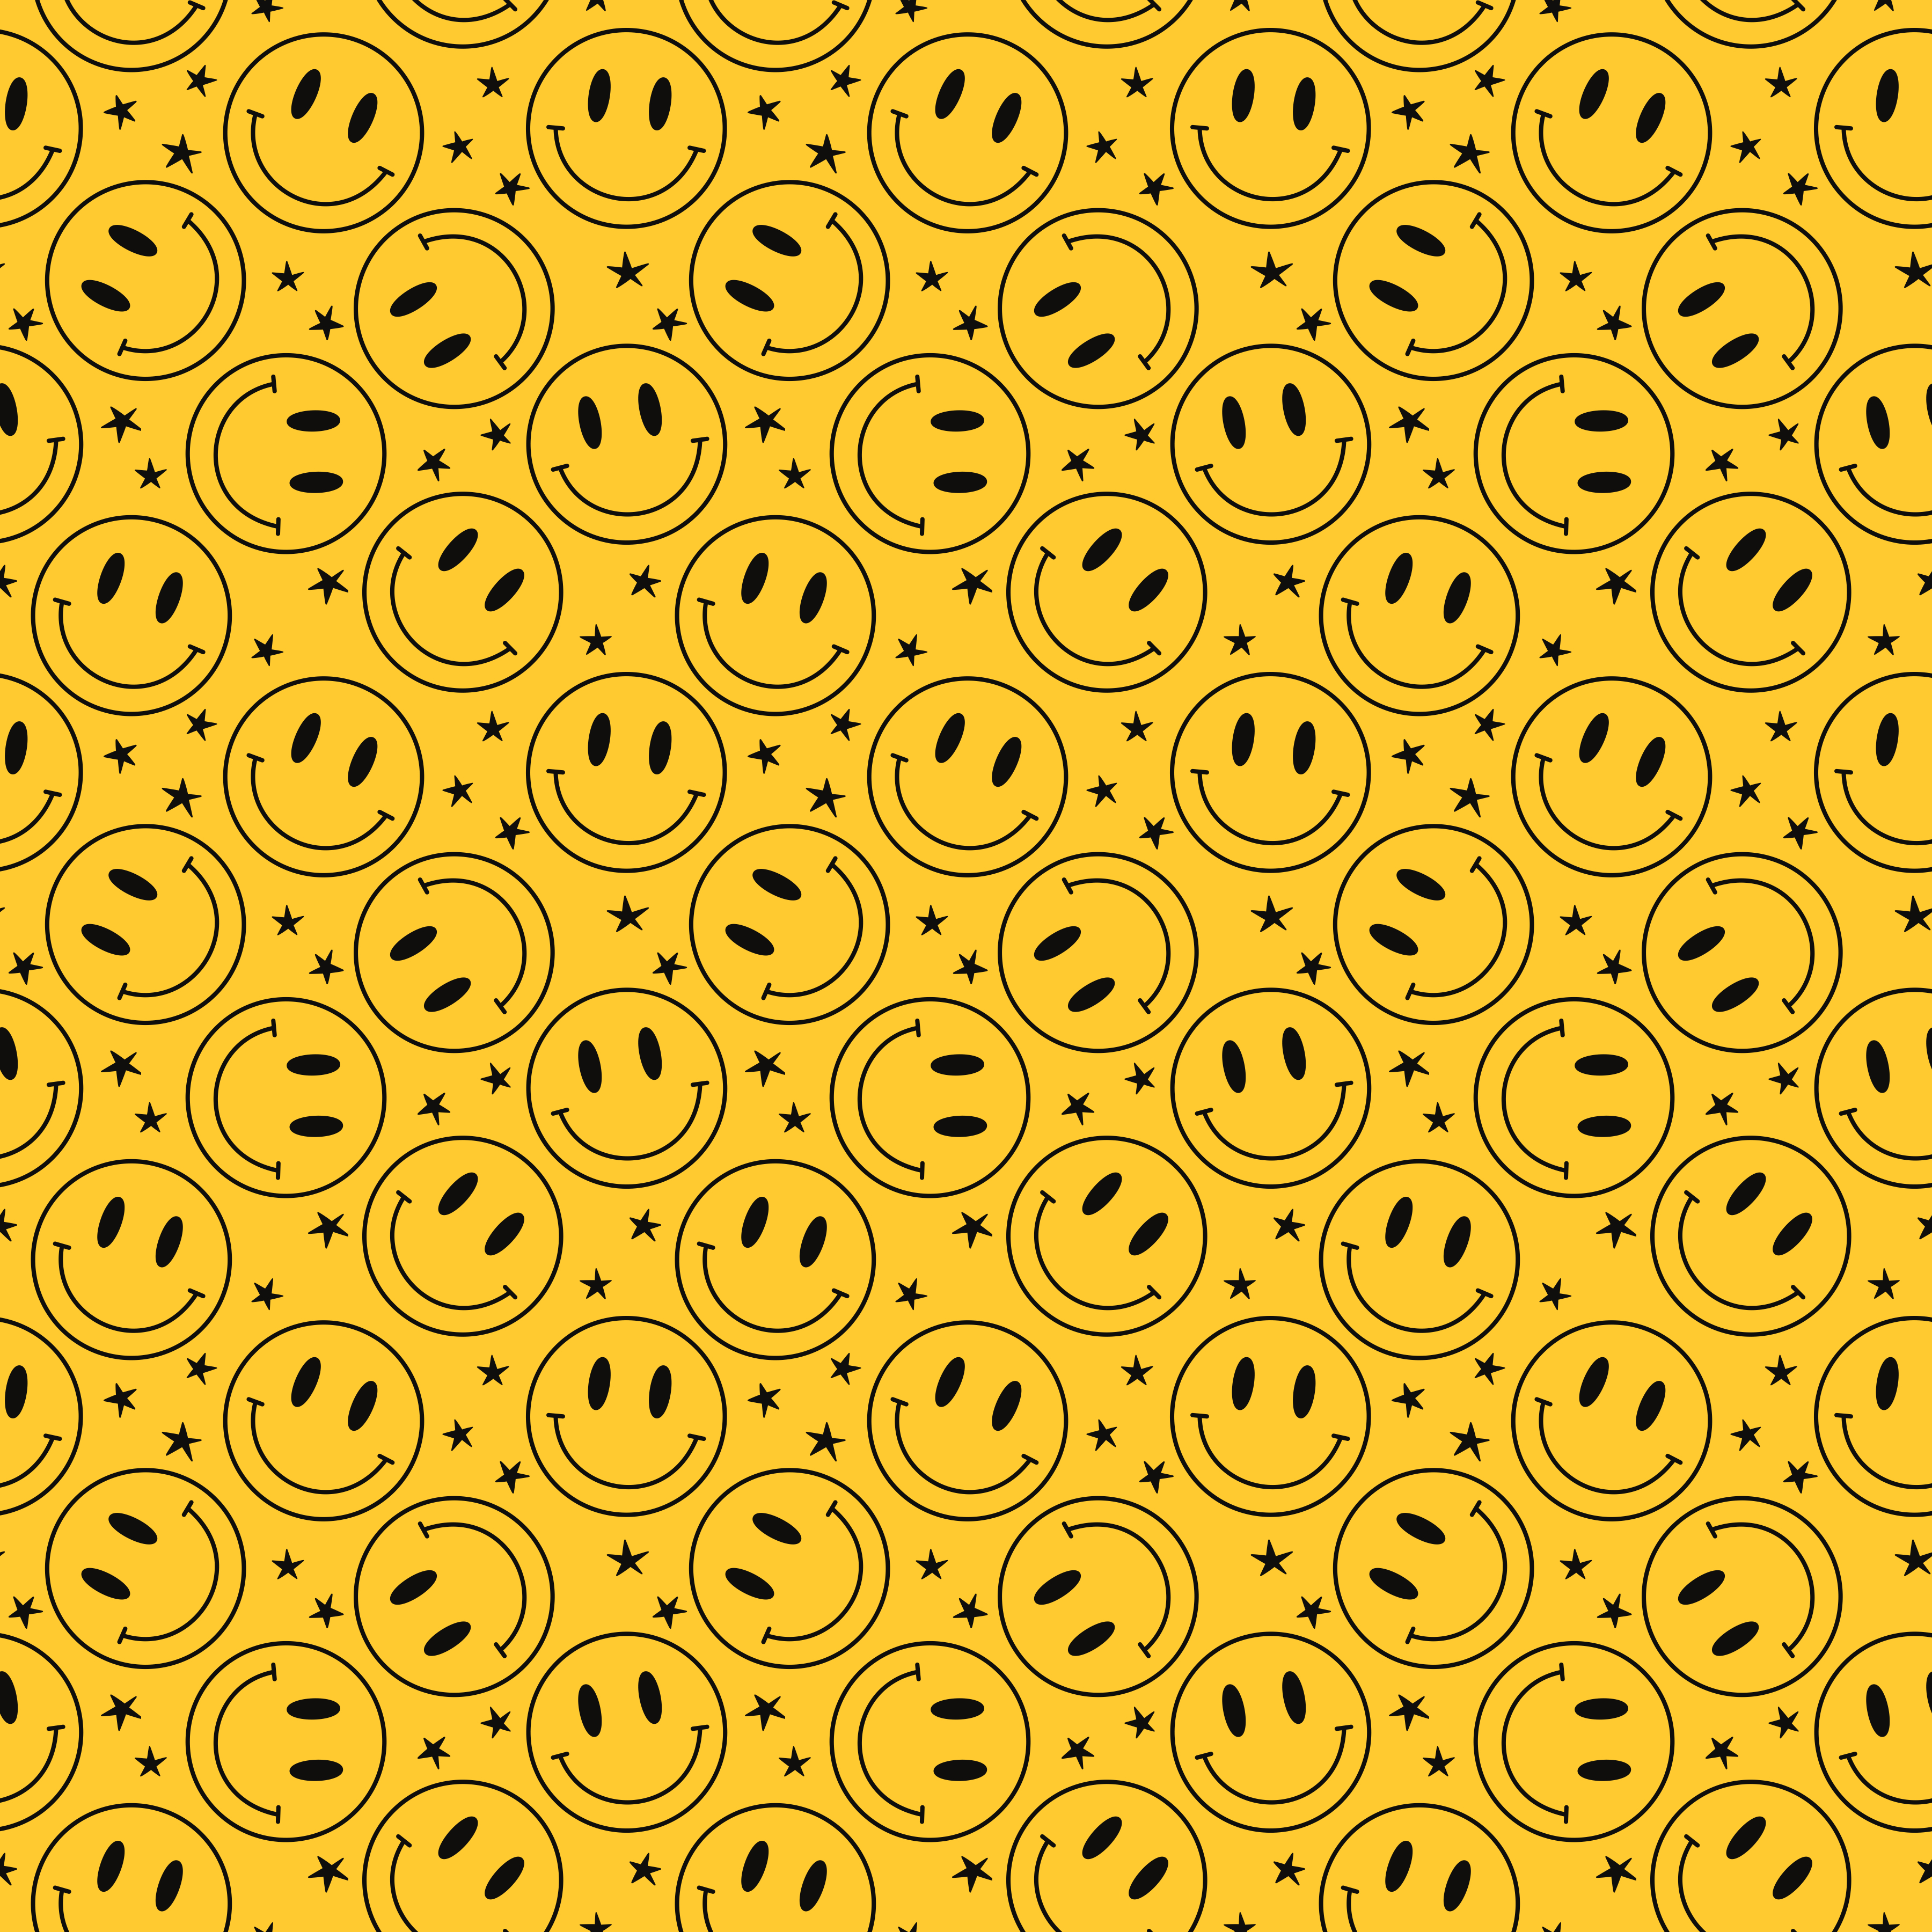 Printed Vinyl | Happy Smiles